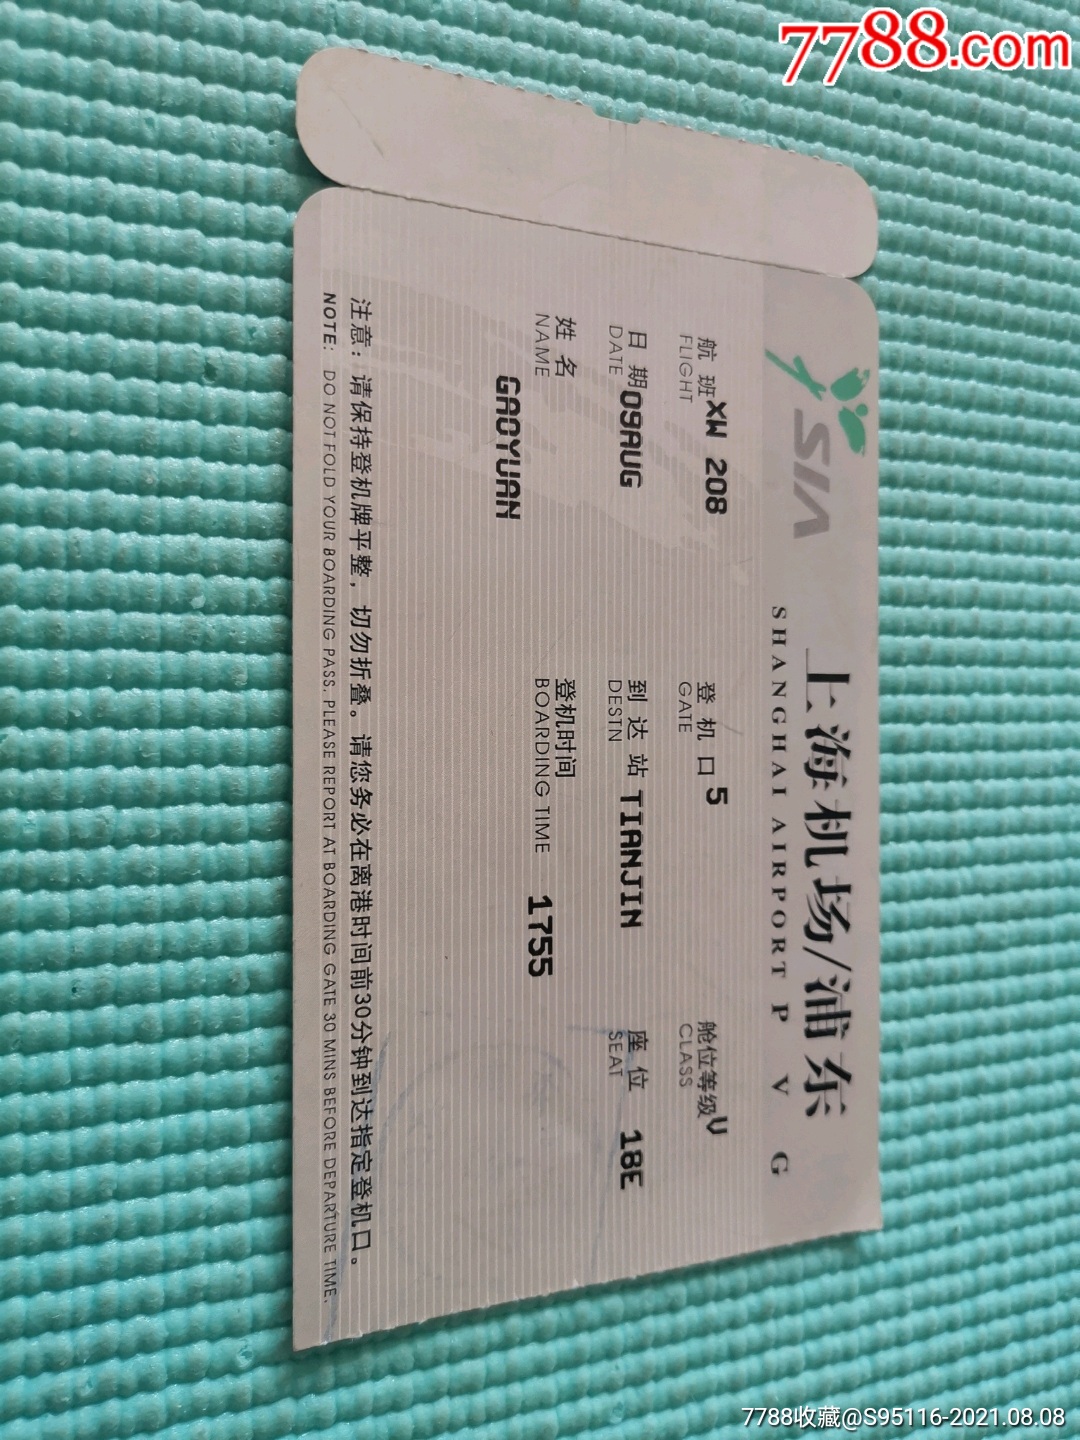 2004年上海浦东机场登机卡